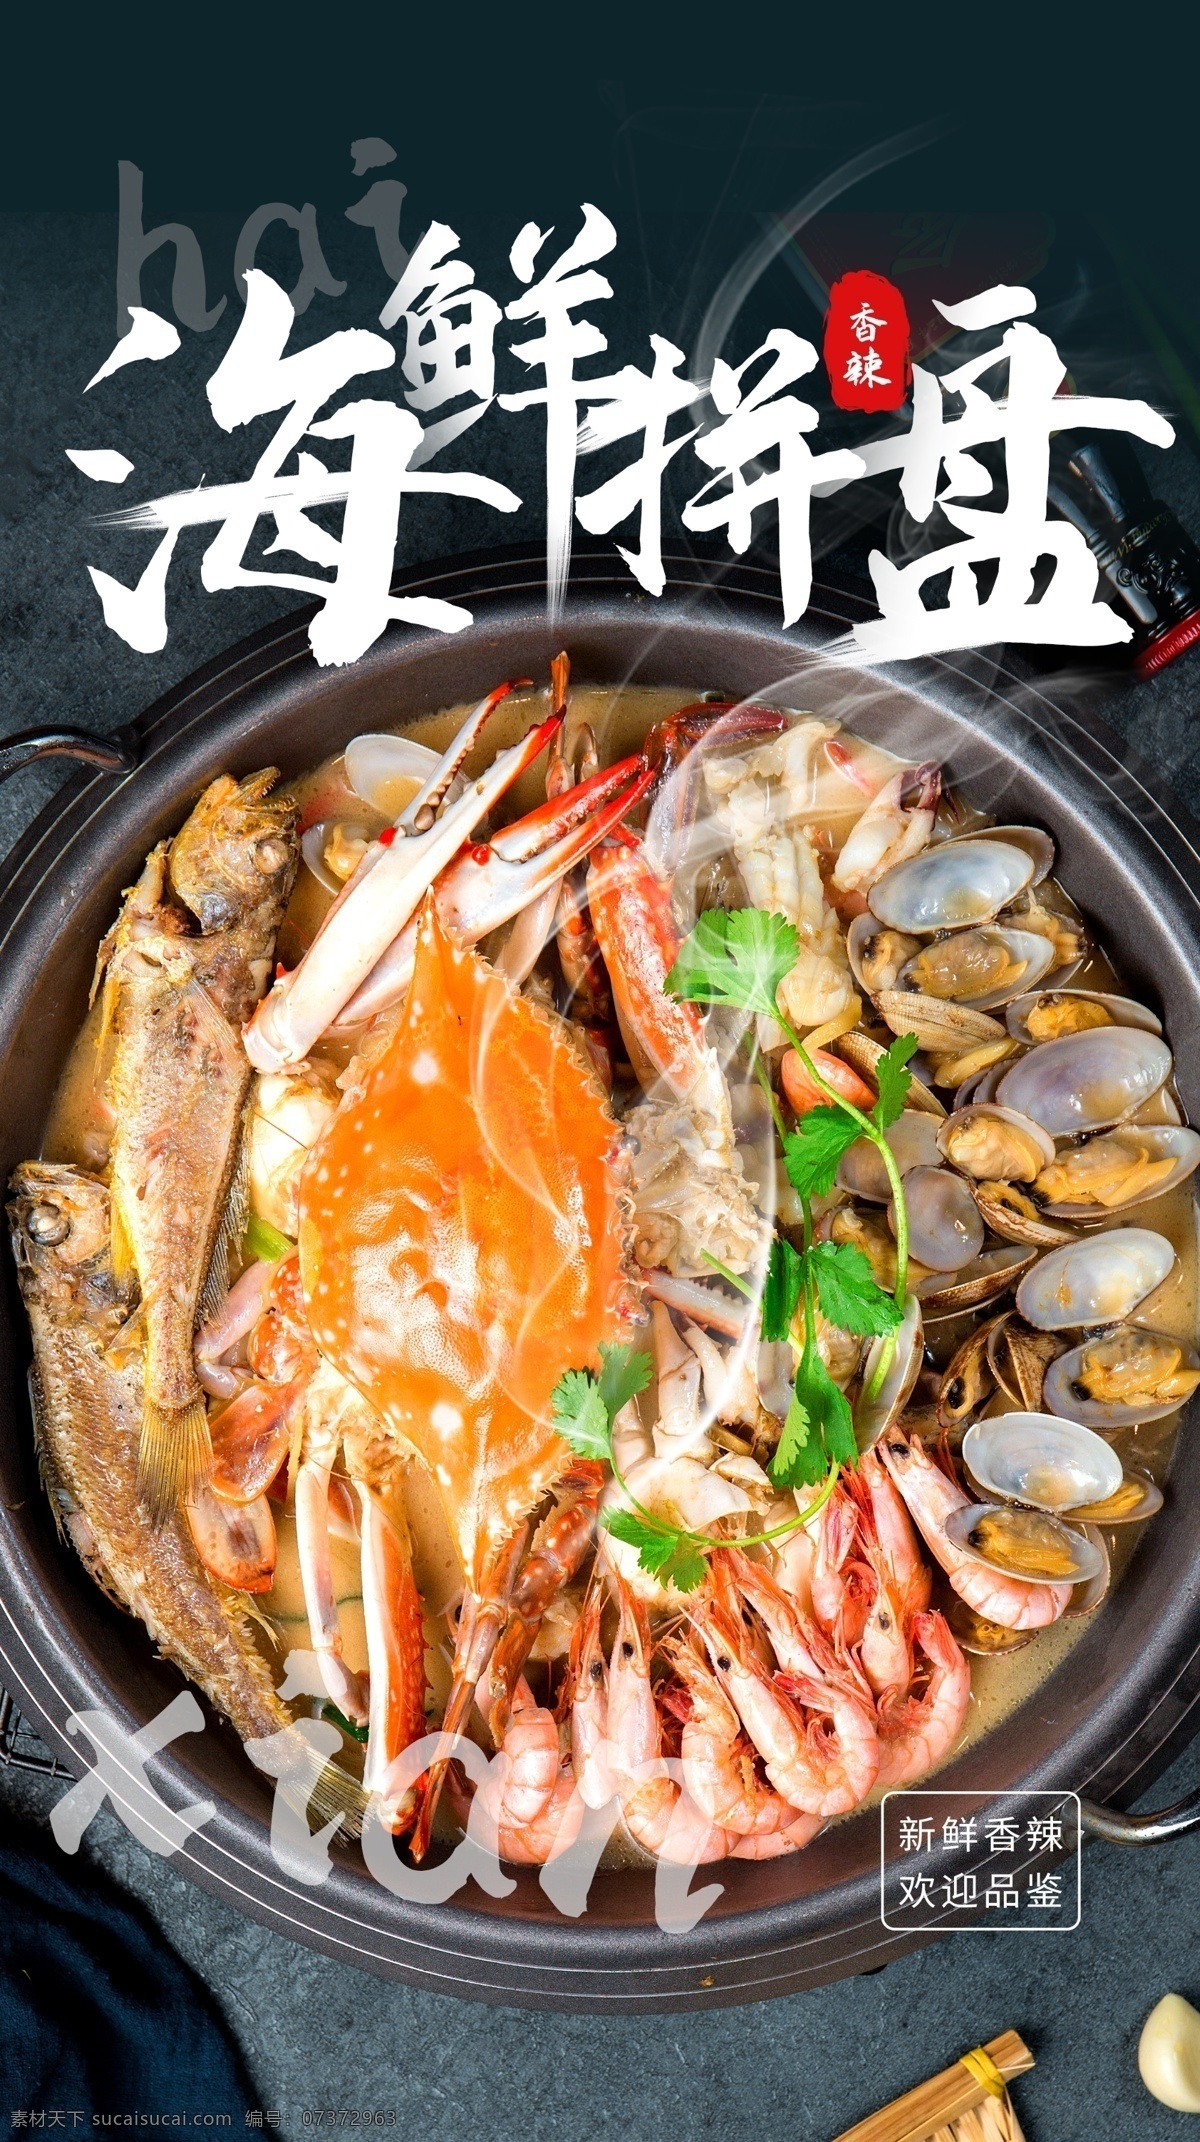 海鲜 拼盘 美食 食 材 活动 海报 素材图片 海鲜拼盘 食材 餐饮美食 类